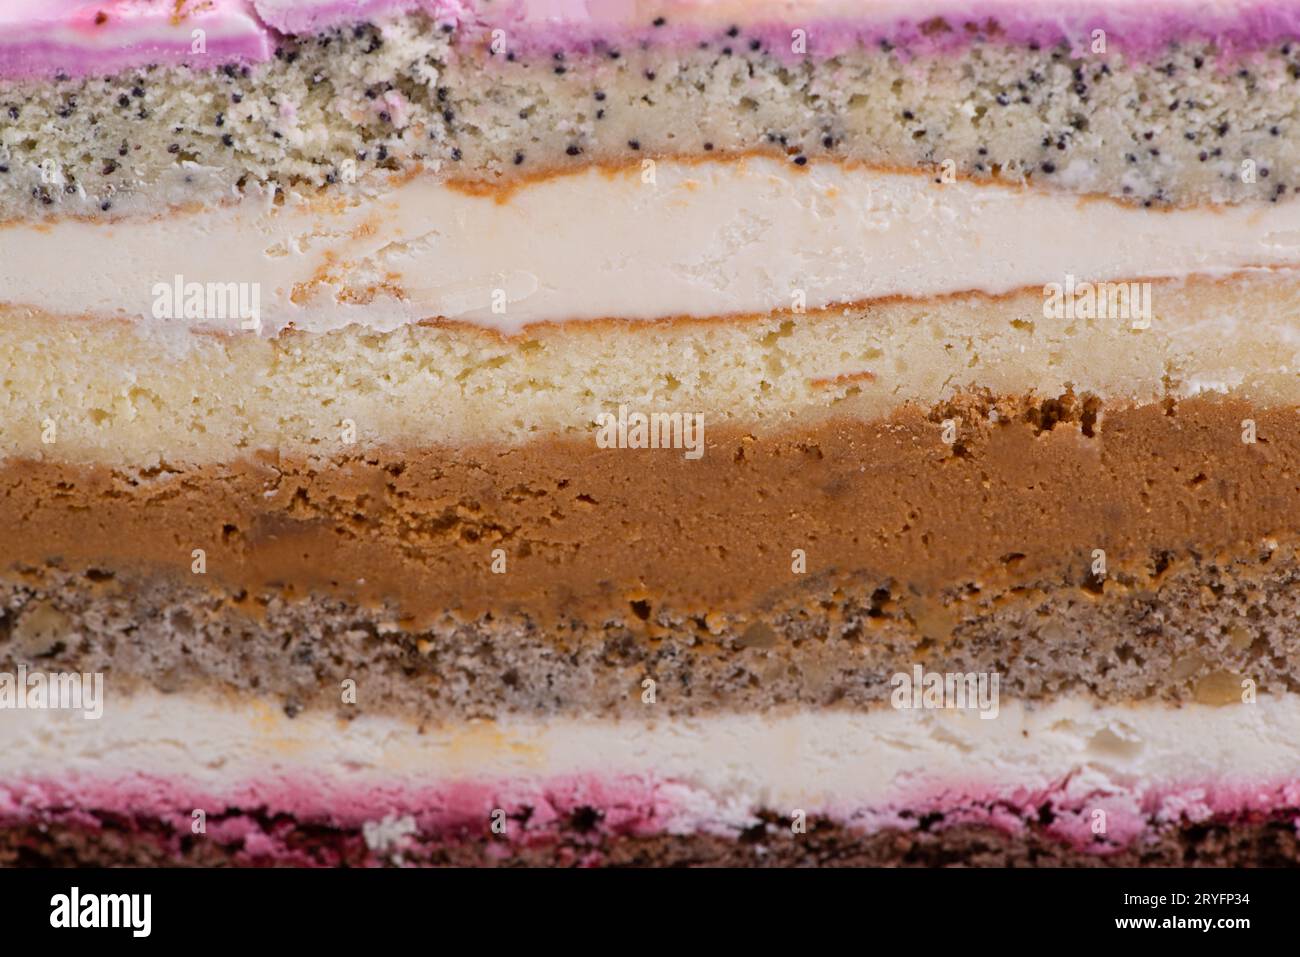 Close up shot of half fruit cake slice. Stock Photo